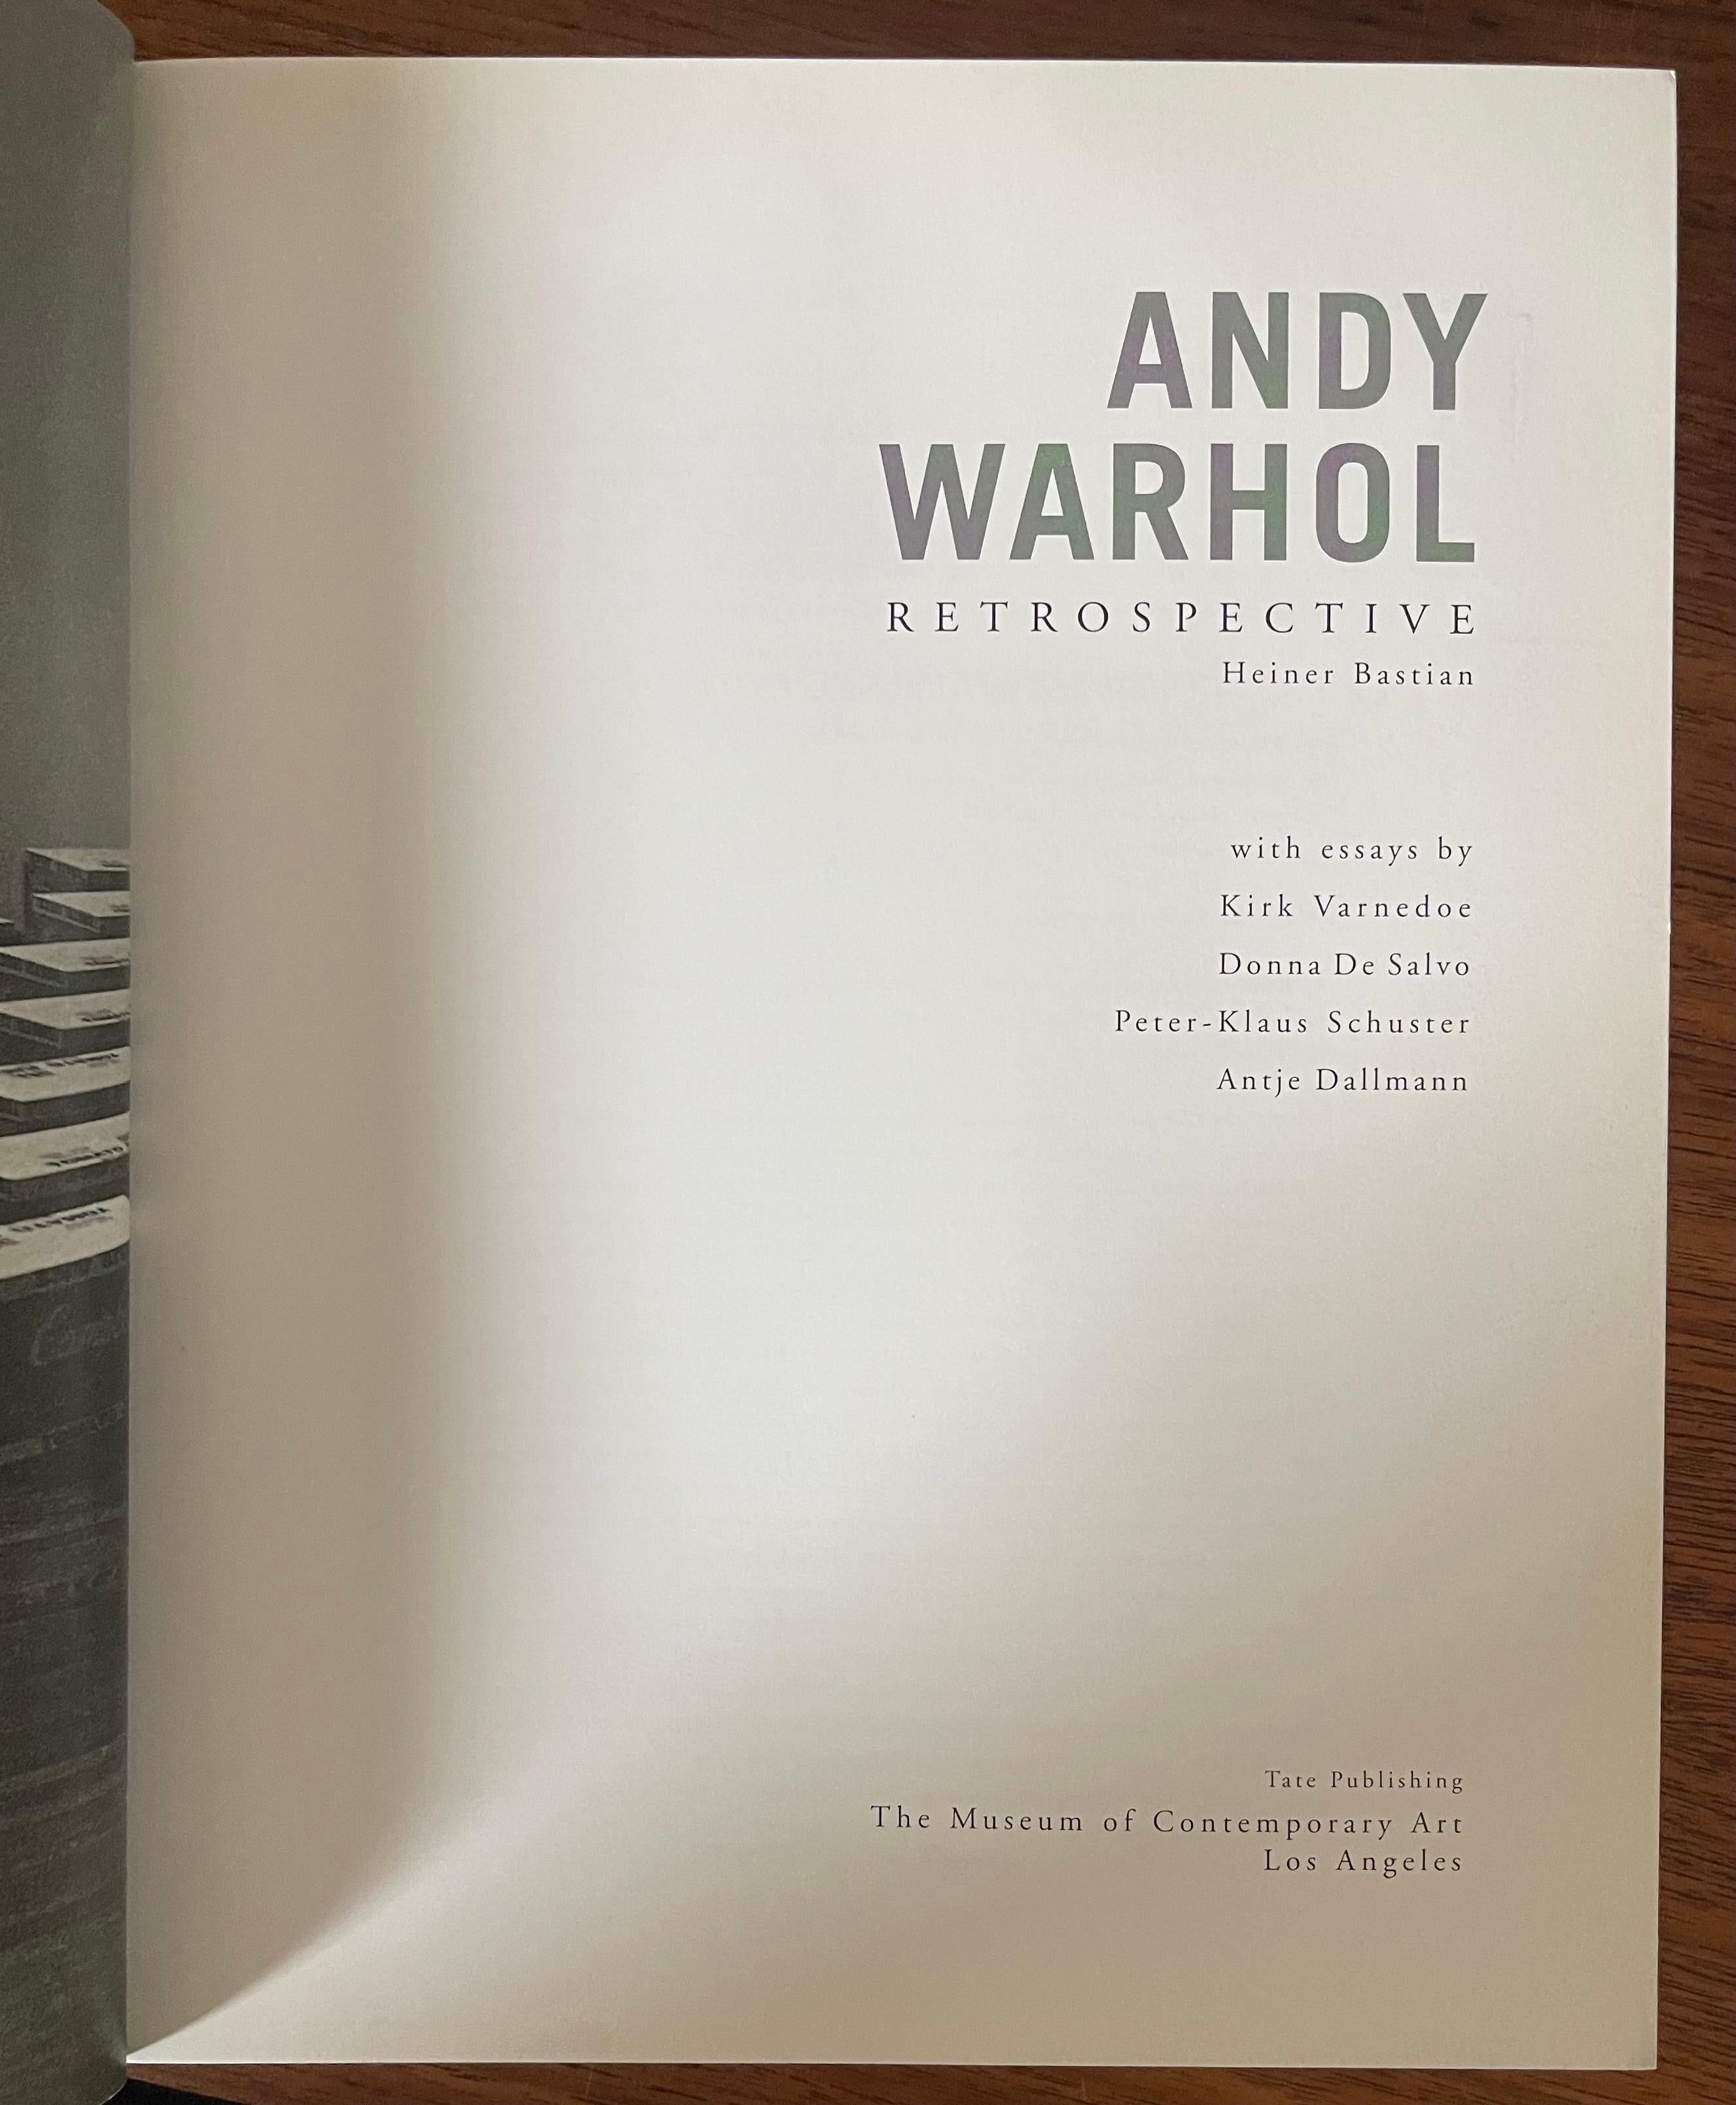 Contemporary Warhol Retrospective Art Book and Exhibit Programs Moca LA 2002 For Sale